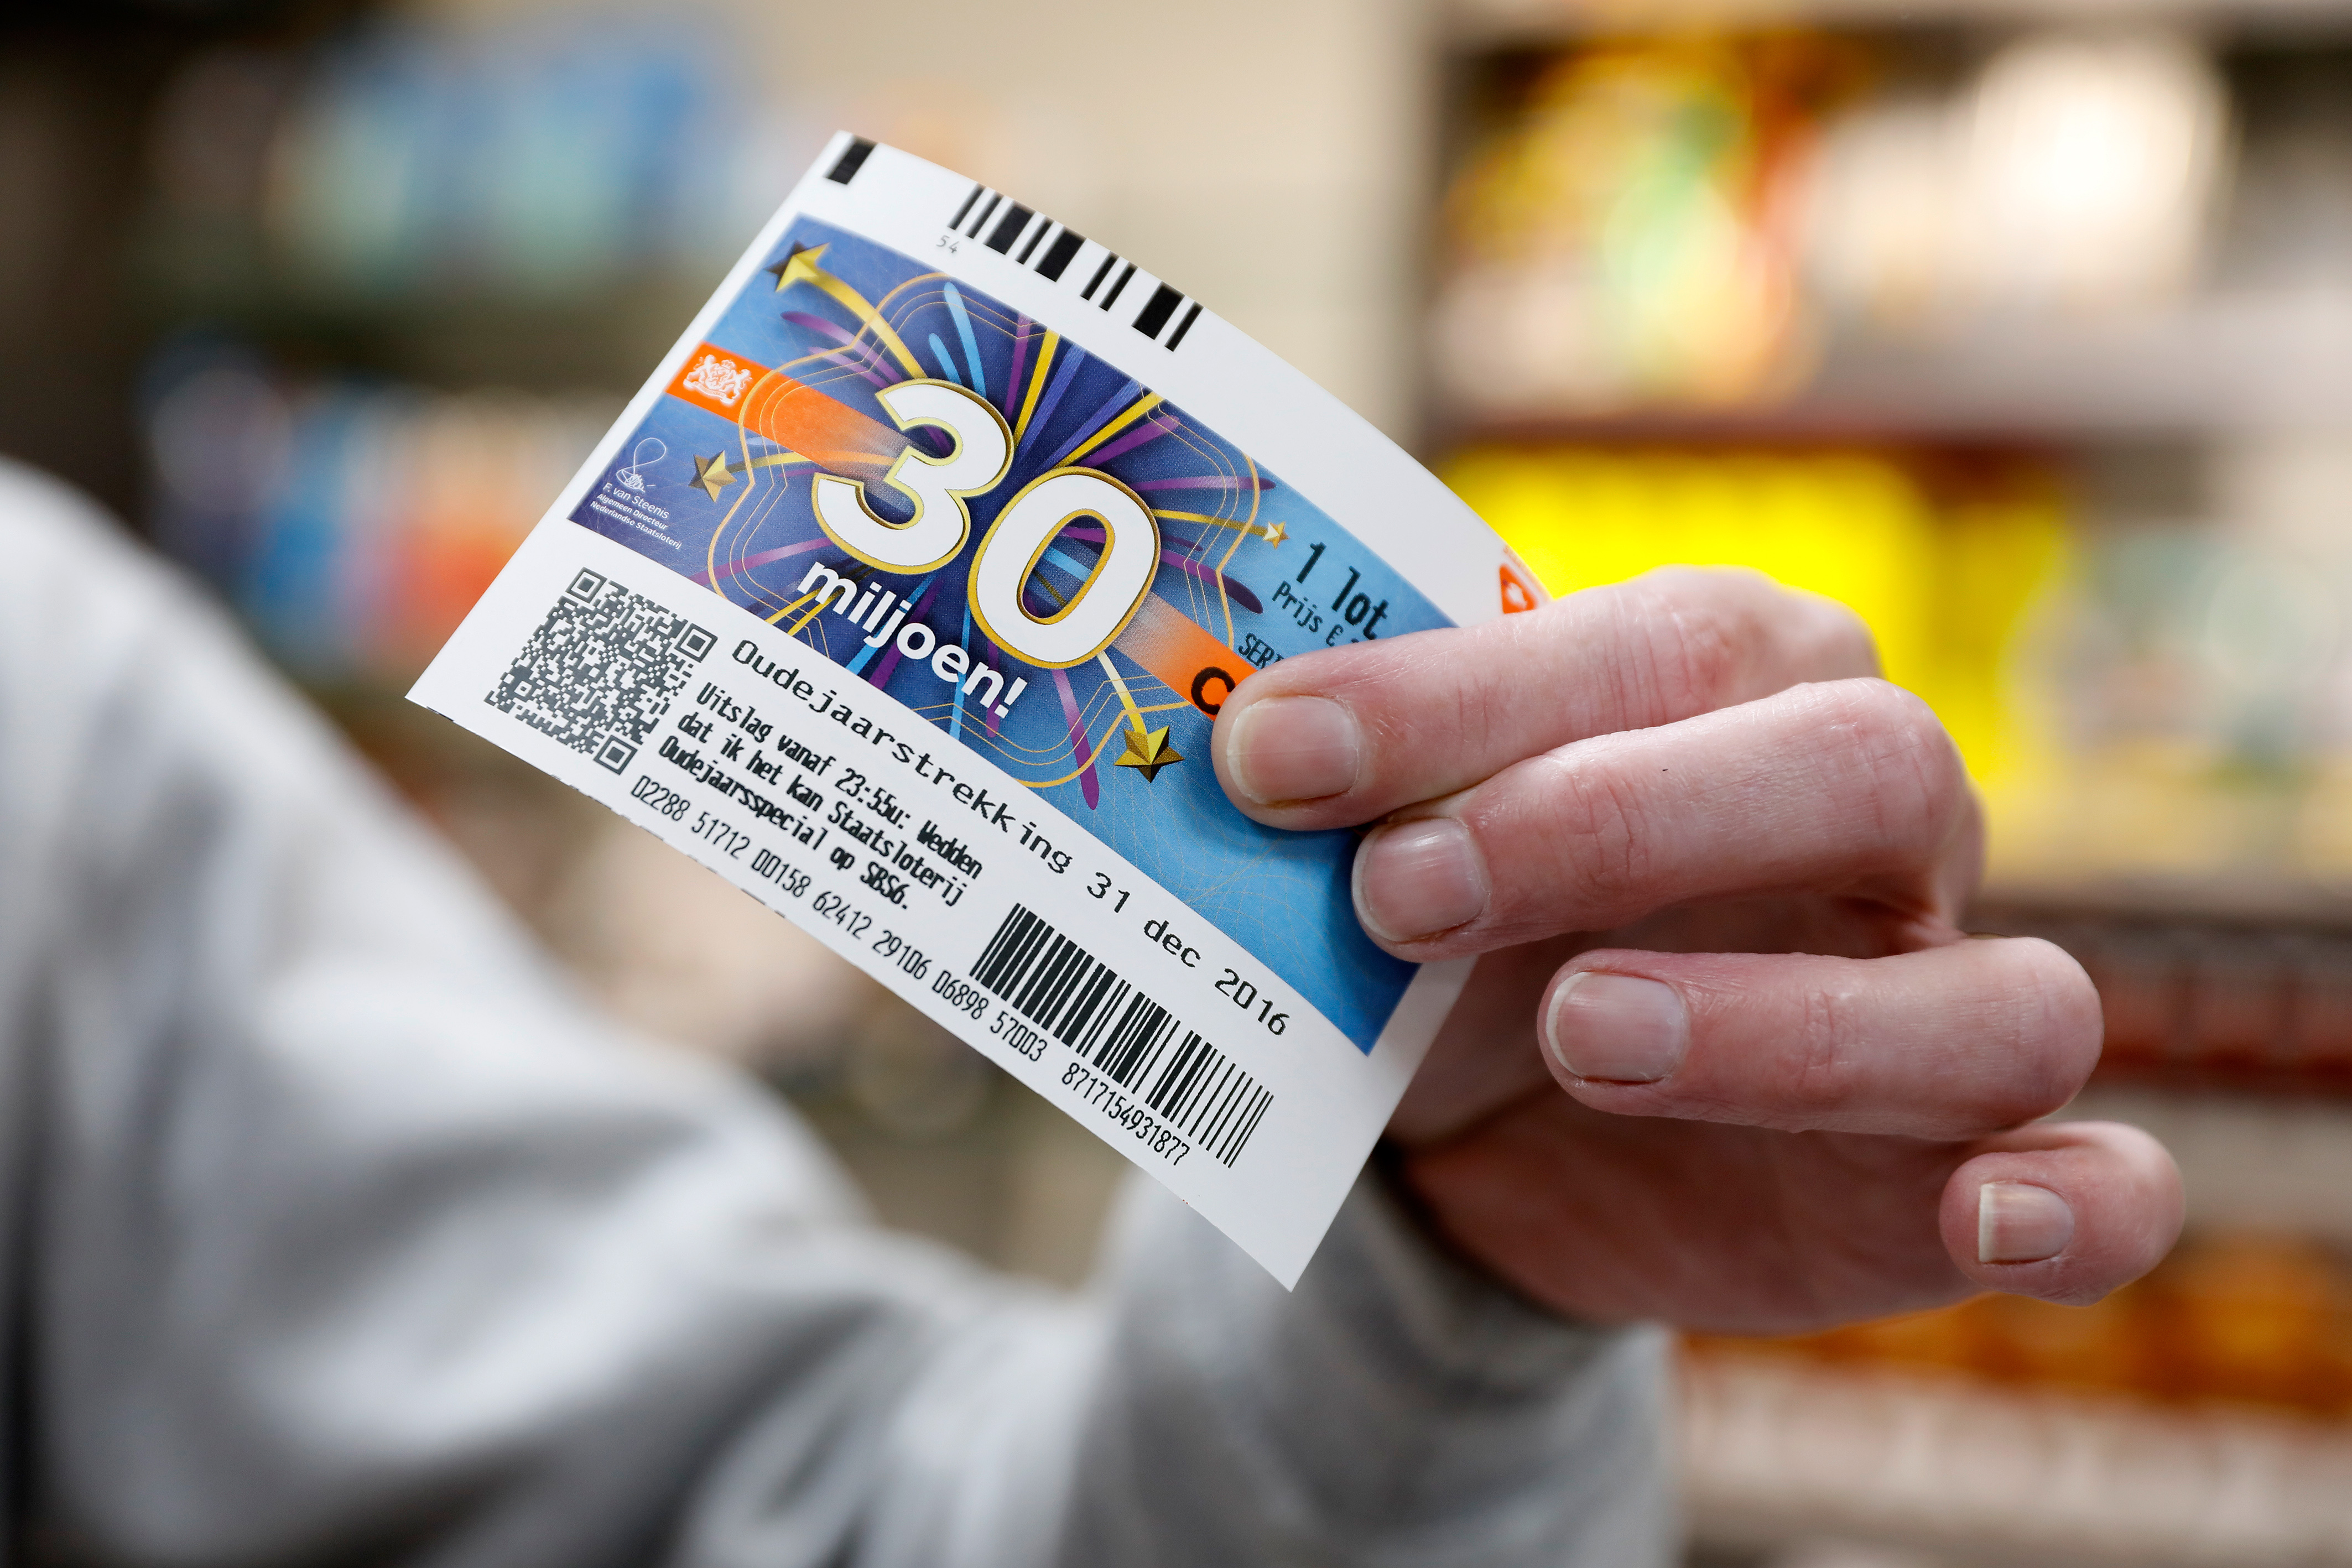 staatsloterij klachten jackpot loterij